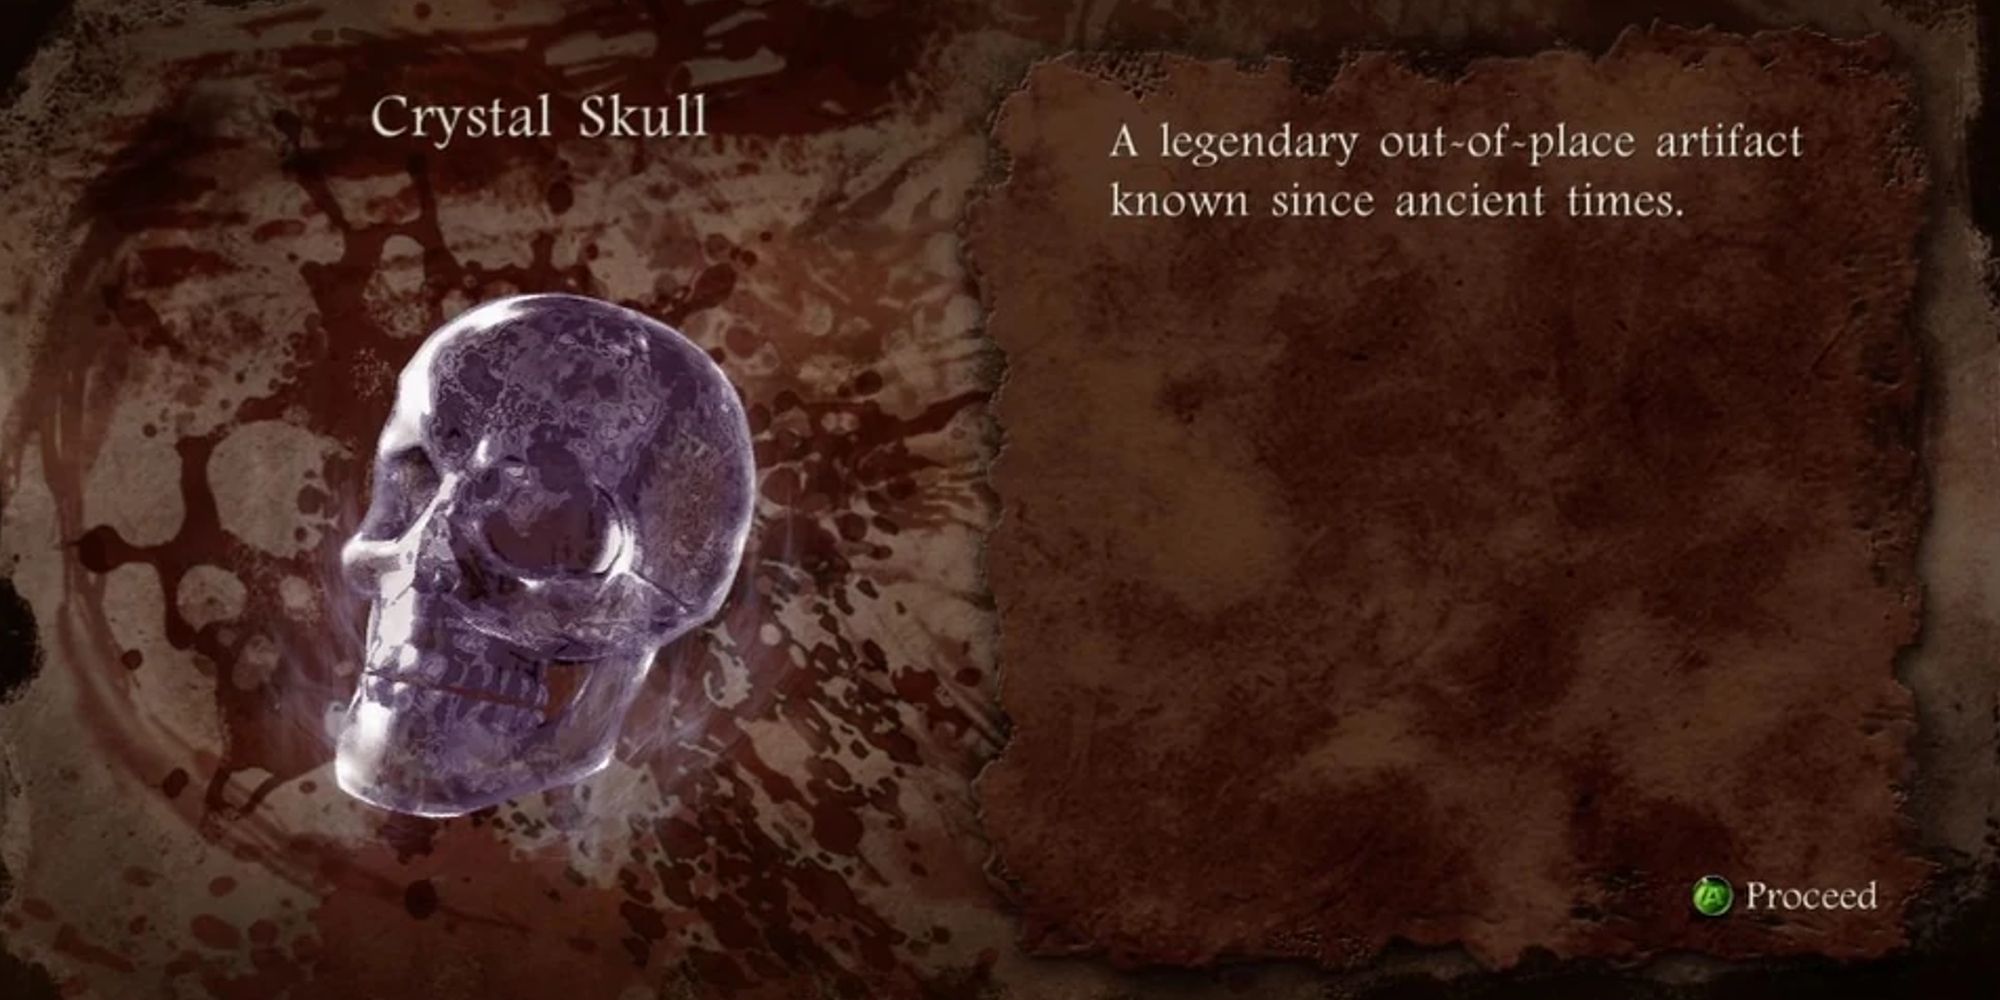 Crystal Skull from Ninja Gaiden 3